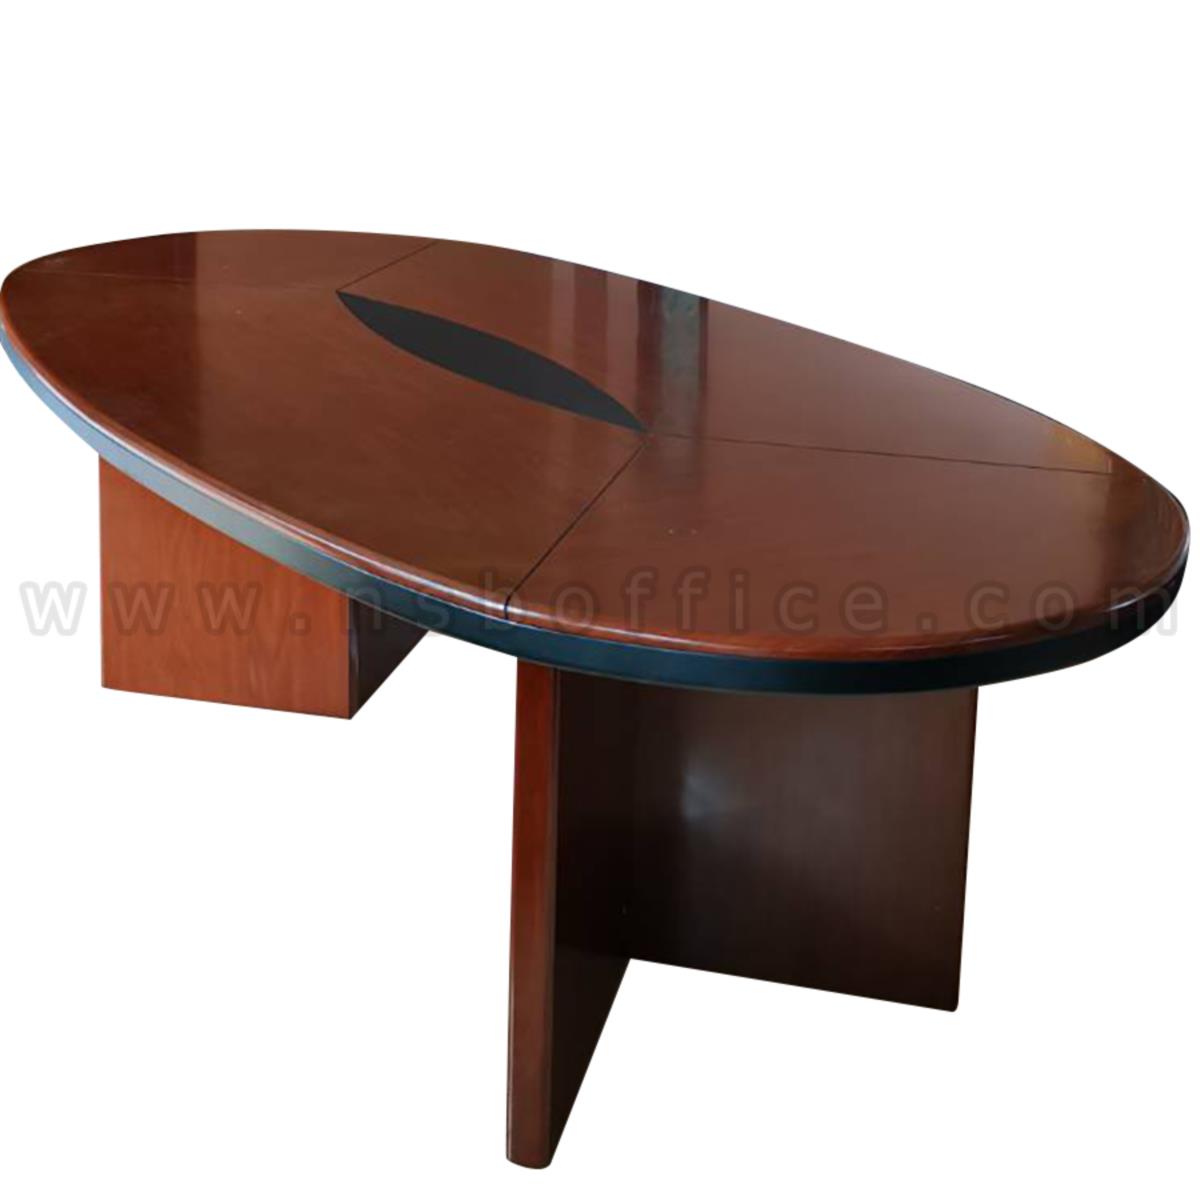 A05A100:โต๊ะประชุมทรงวงรี 10 ที่นั่ง รุ่น Yadira (ยาดีรา)  ขนาด 240W cm. สีมะฮอกกานี 